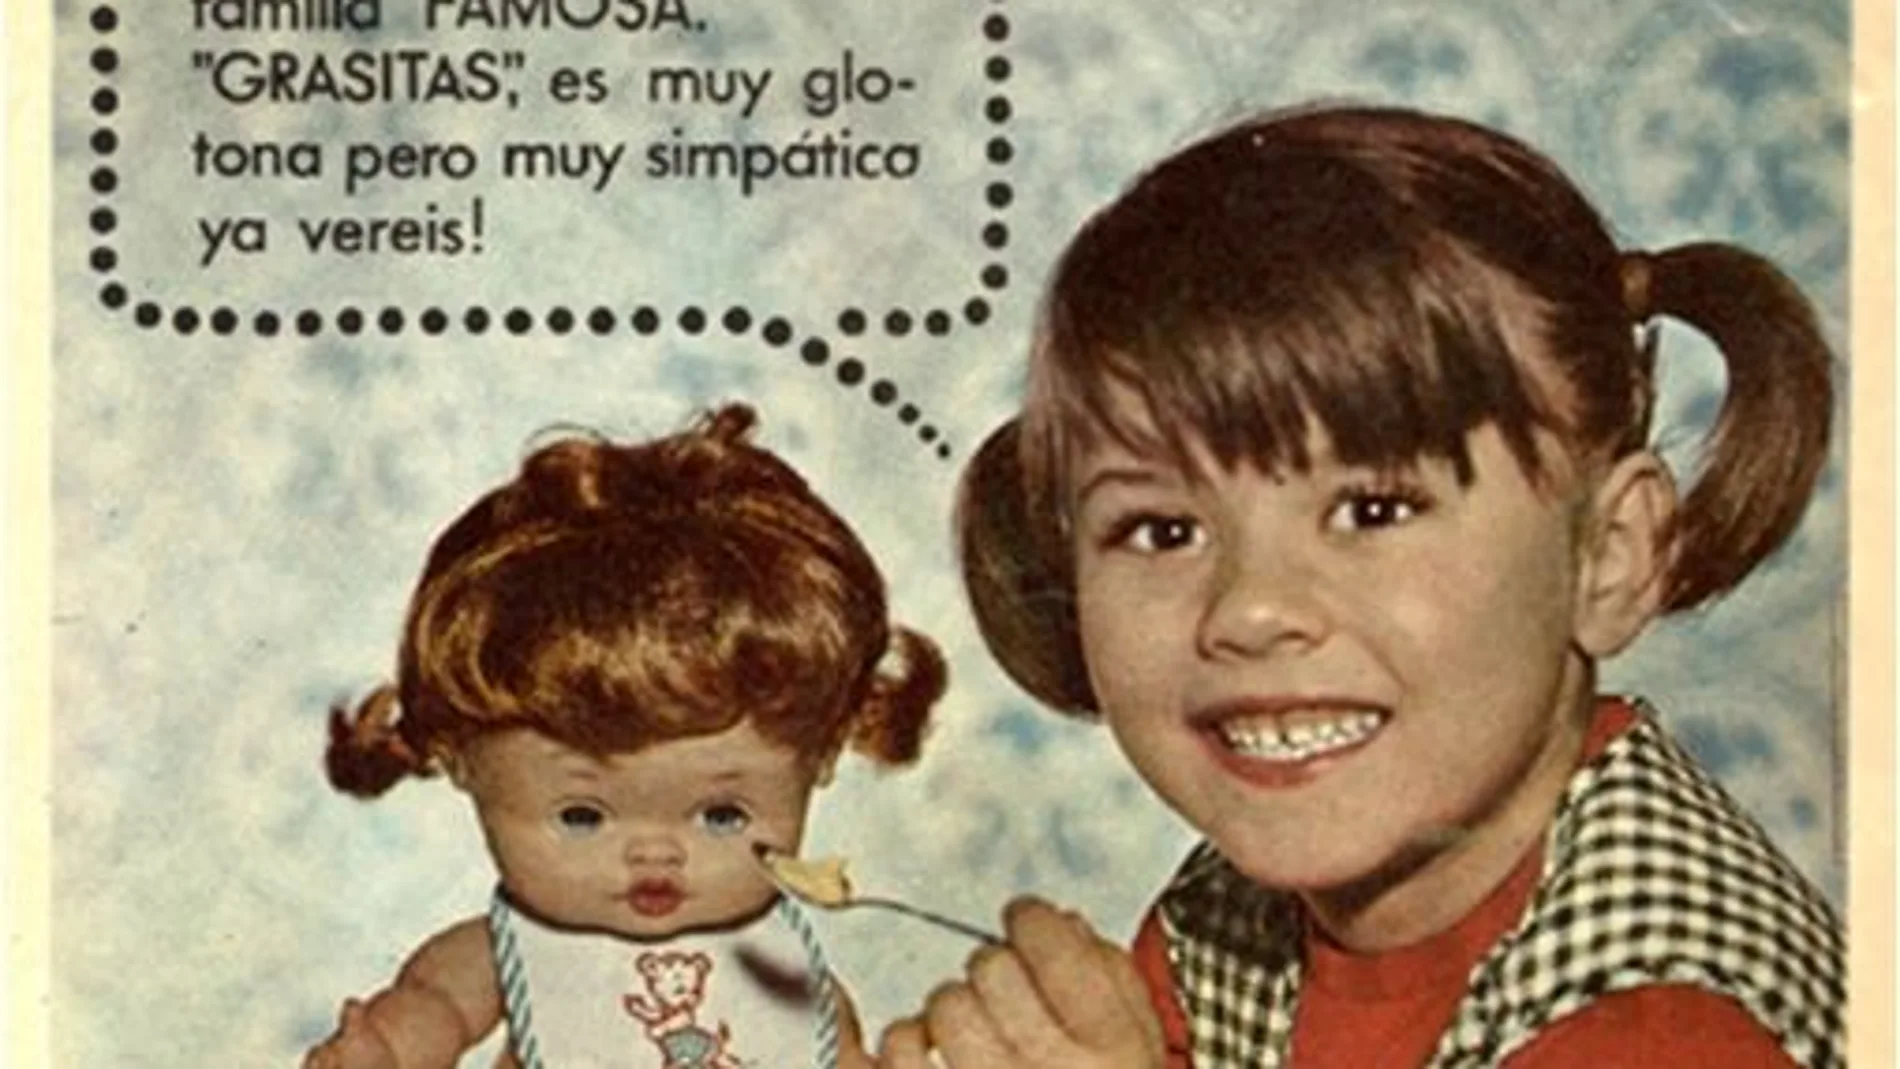 Mítico anuncio de muñeca de Famosa